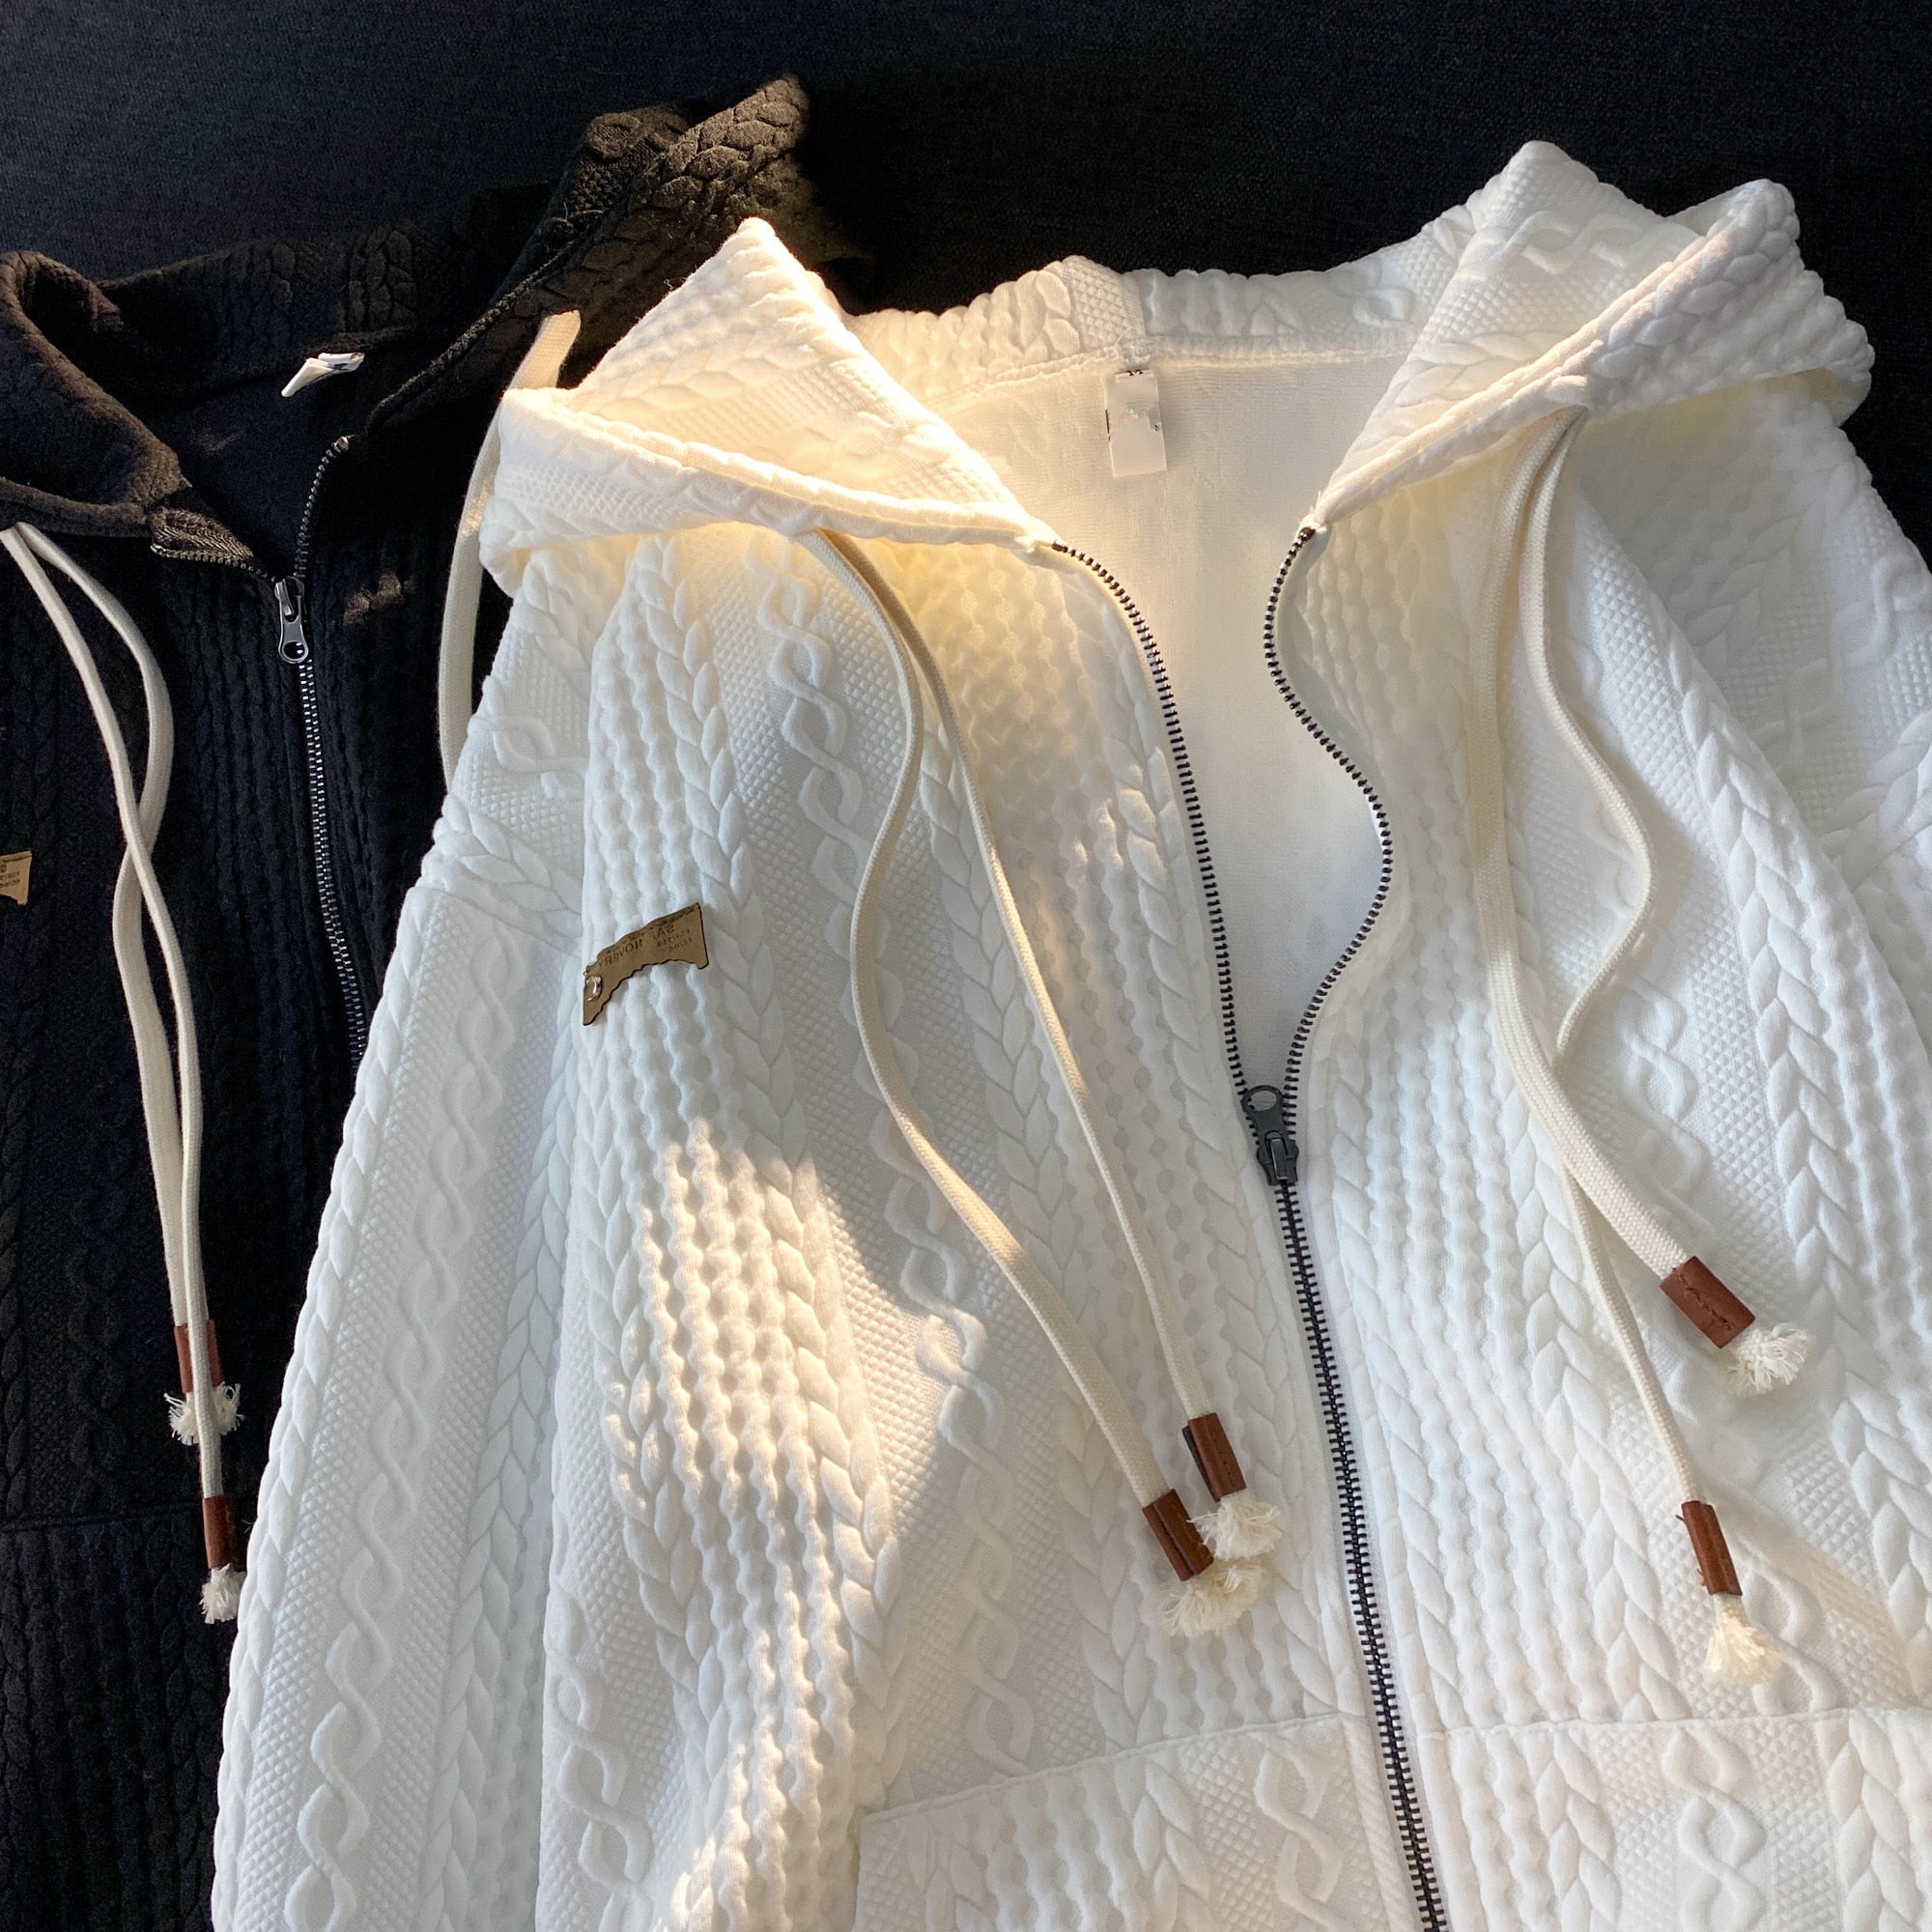 Loose Zip Up Hoodies with Pocket Vintage Zipper Hooded Sweatshirts Women Streetwear Long Sleeve Cardigan y2k Top Cloth Female